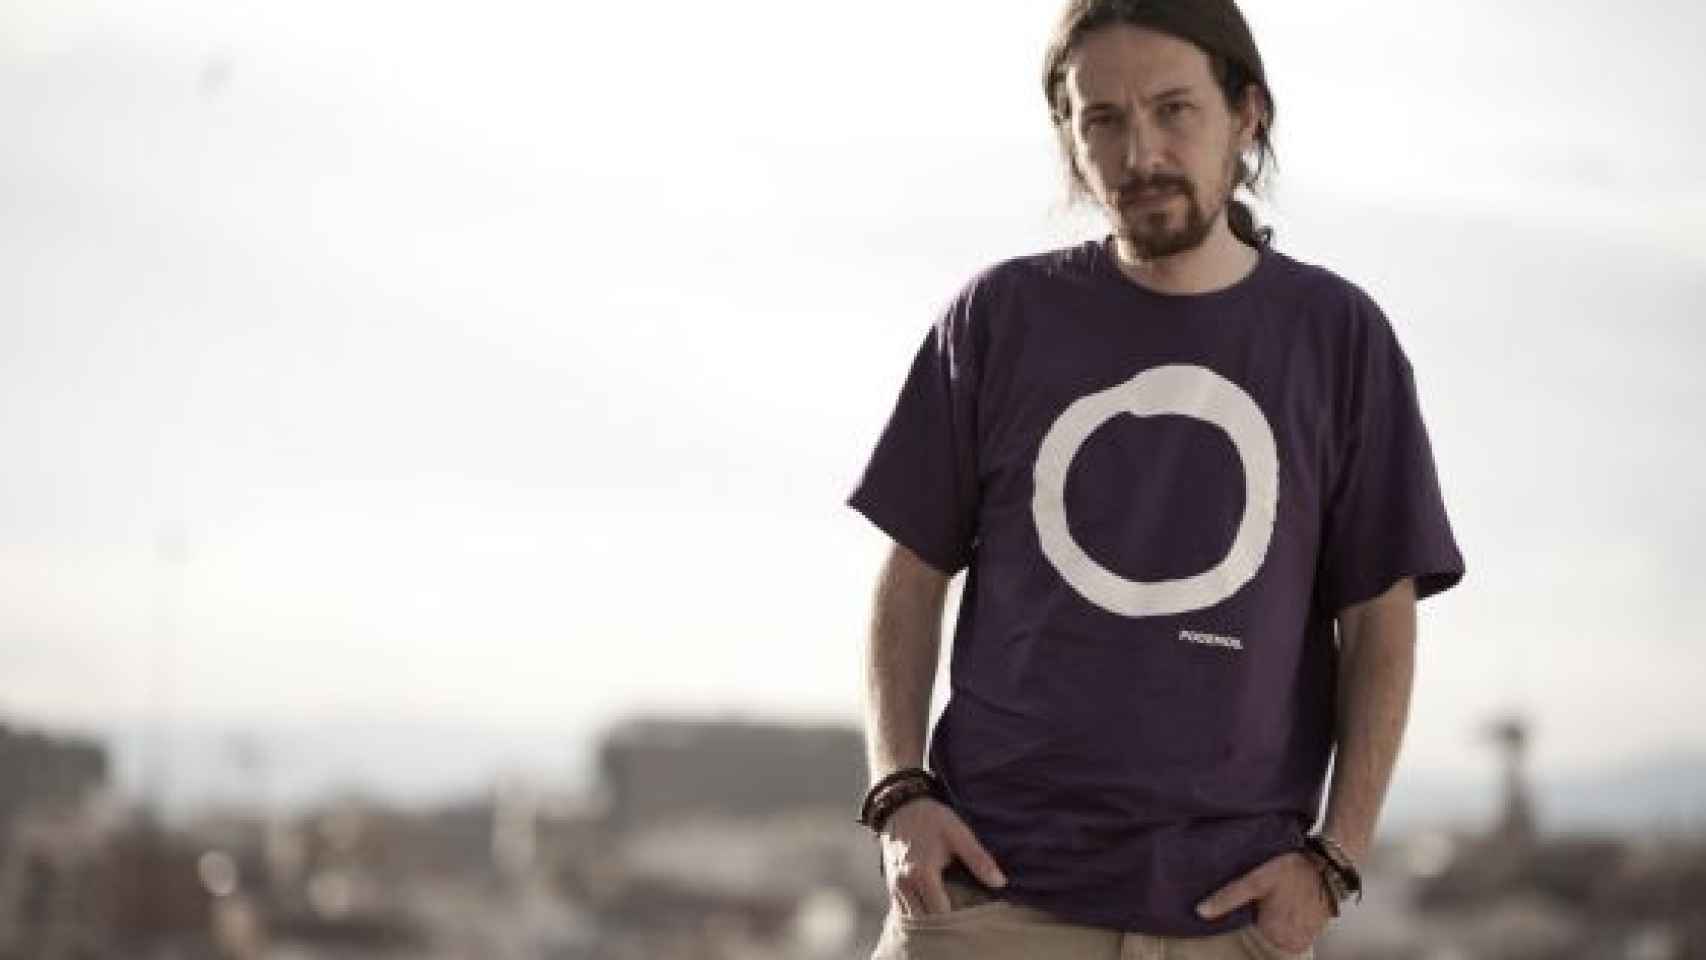 Imagen promocional del partido con las nuevas camisetas de Podemos en 2014.